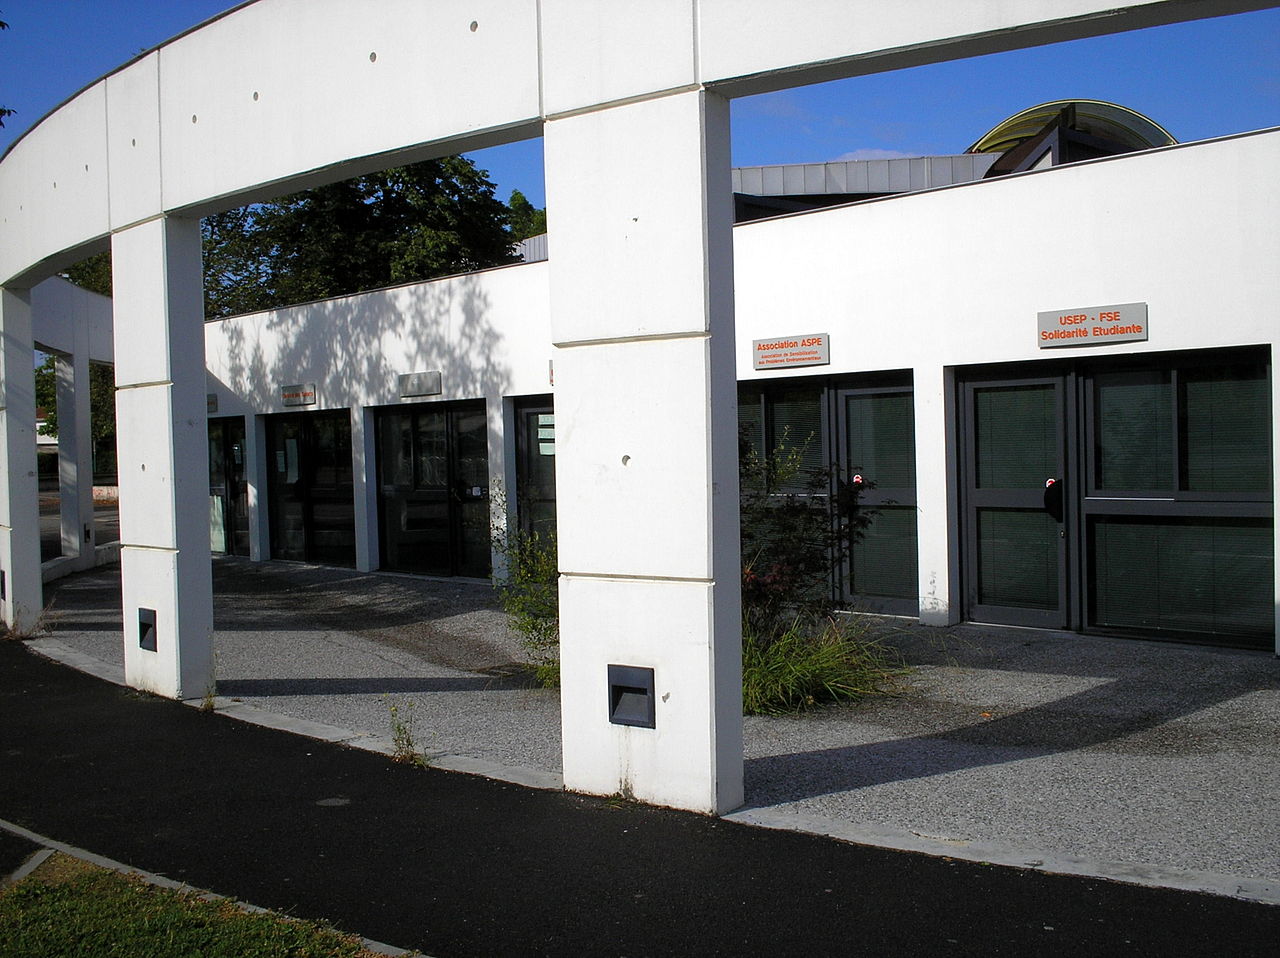 Maison de l'étudiant near Cap Sud restaurant on UPPA campus in Pau, France